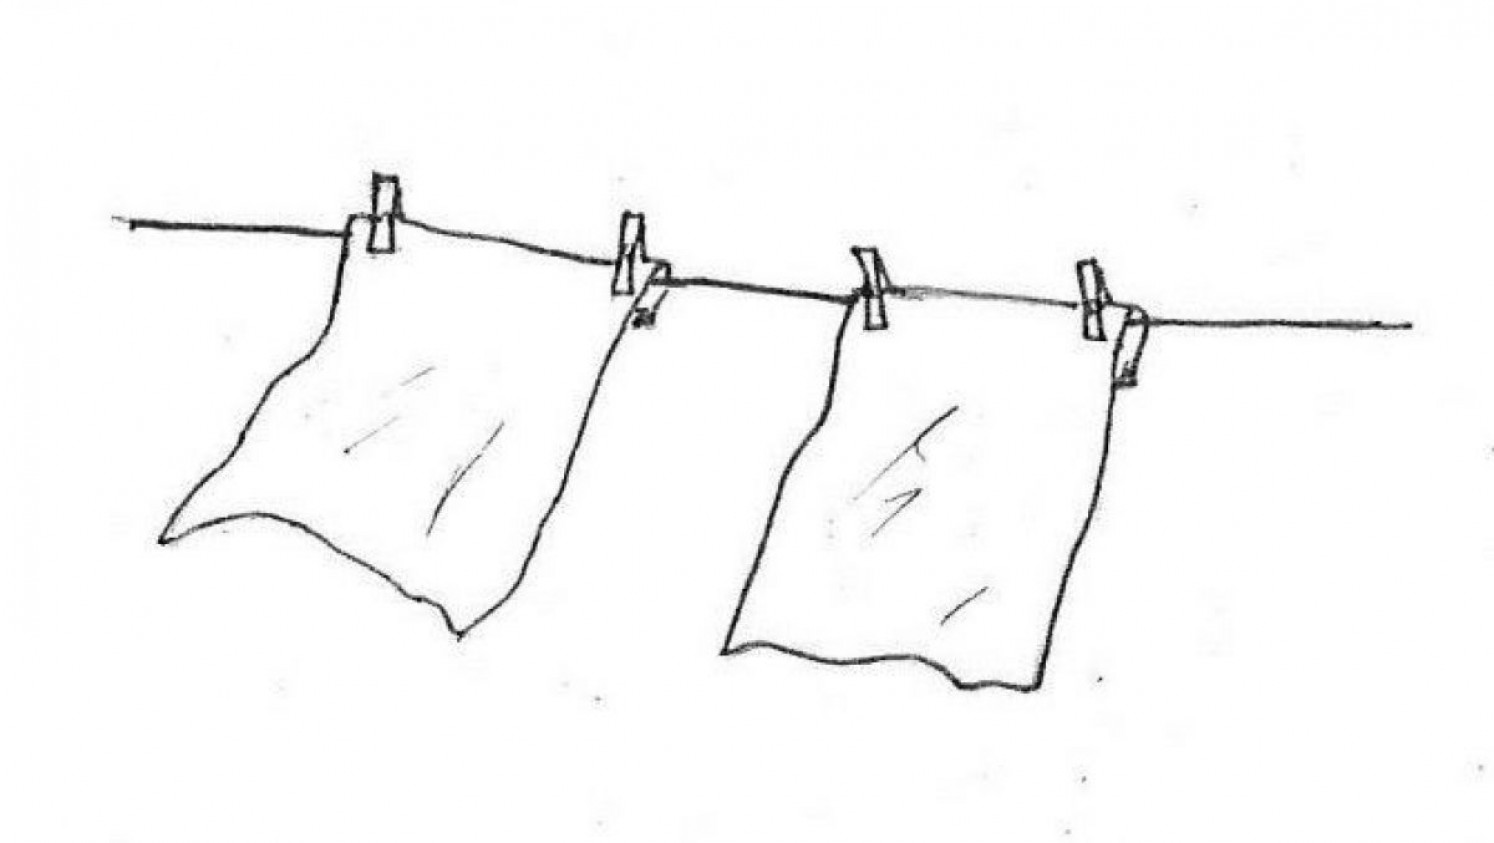 Grobstaub in der Luft kann durch an der Wäscheleine aufgehängte weiße Tücher sichtbar gemacht werden.